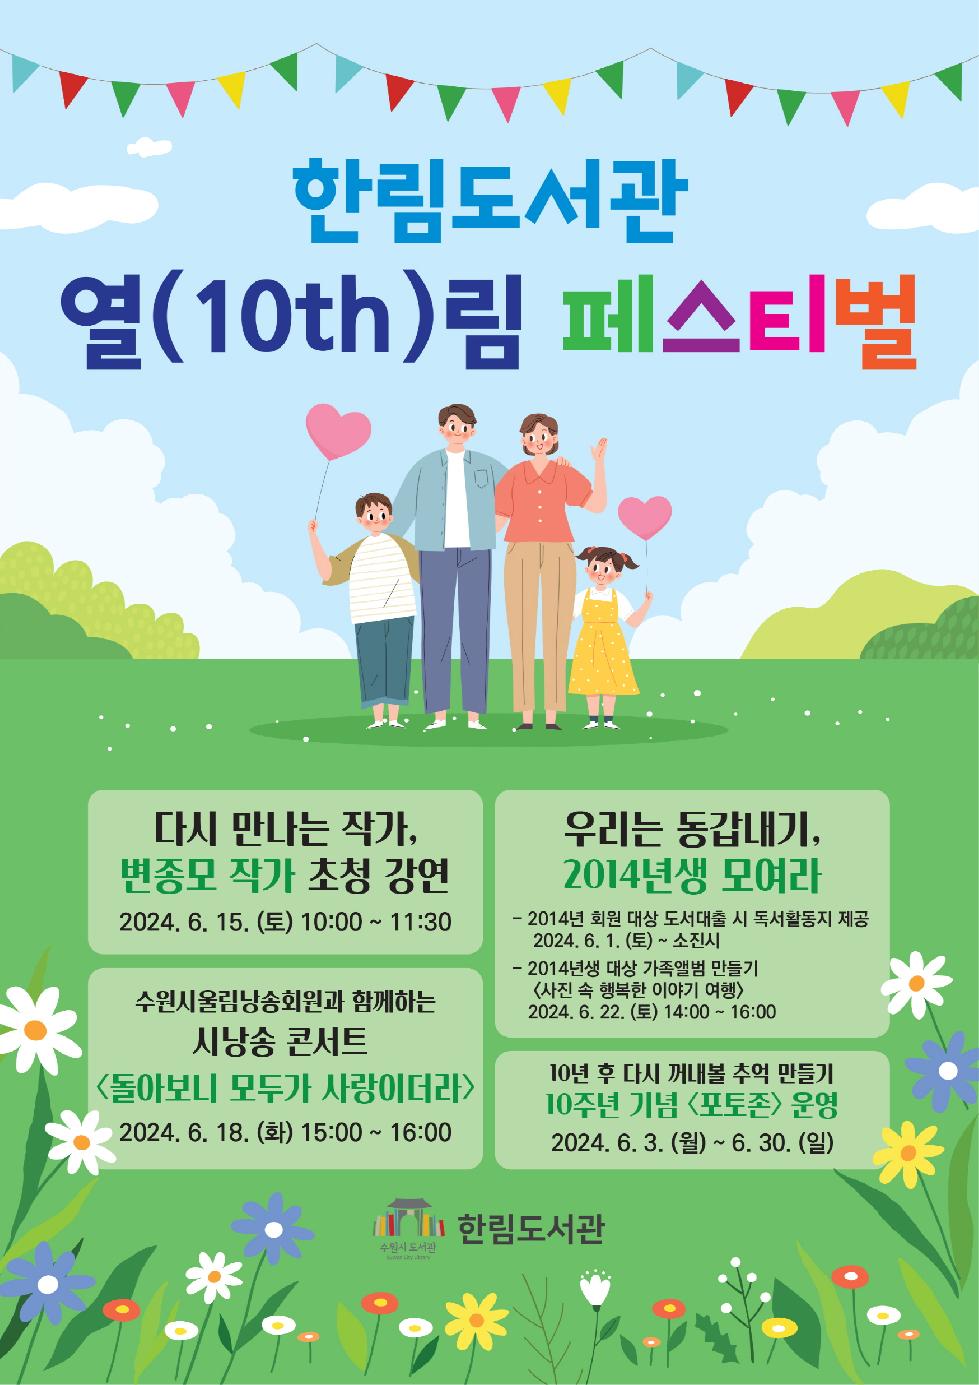 수원시 한림도서관, 개관 10주년 기념 열(10th)림 페스티벌 개최